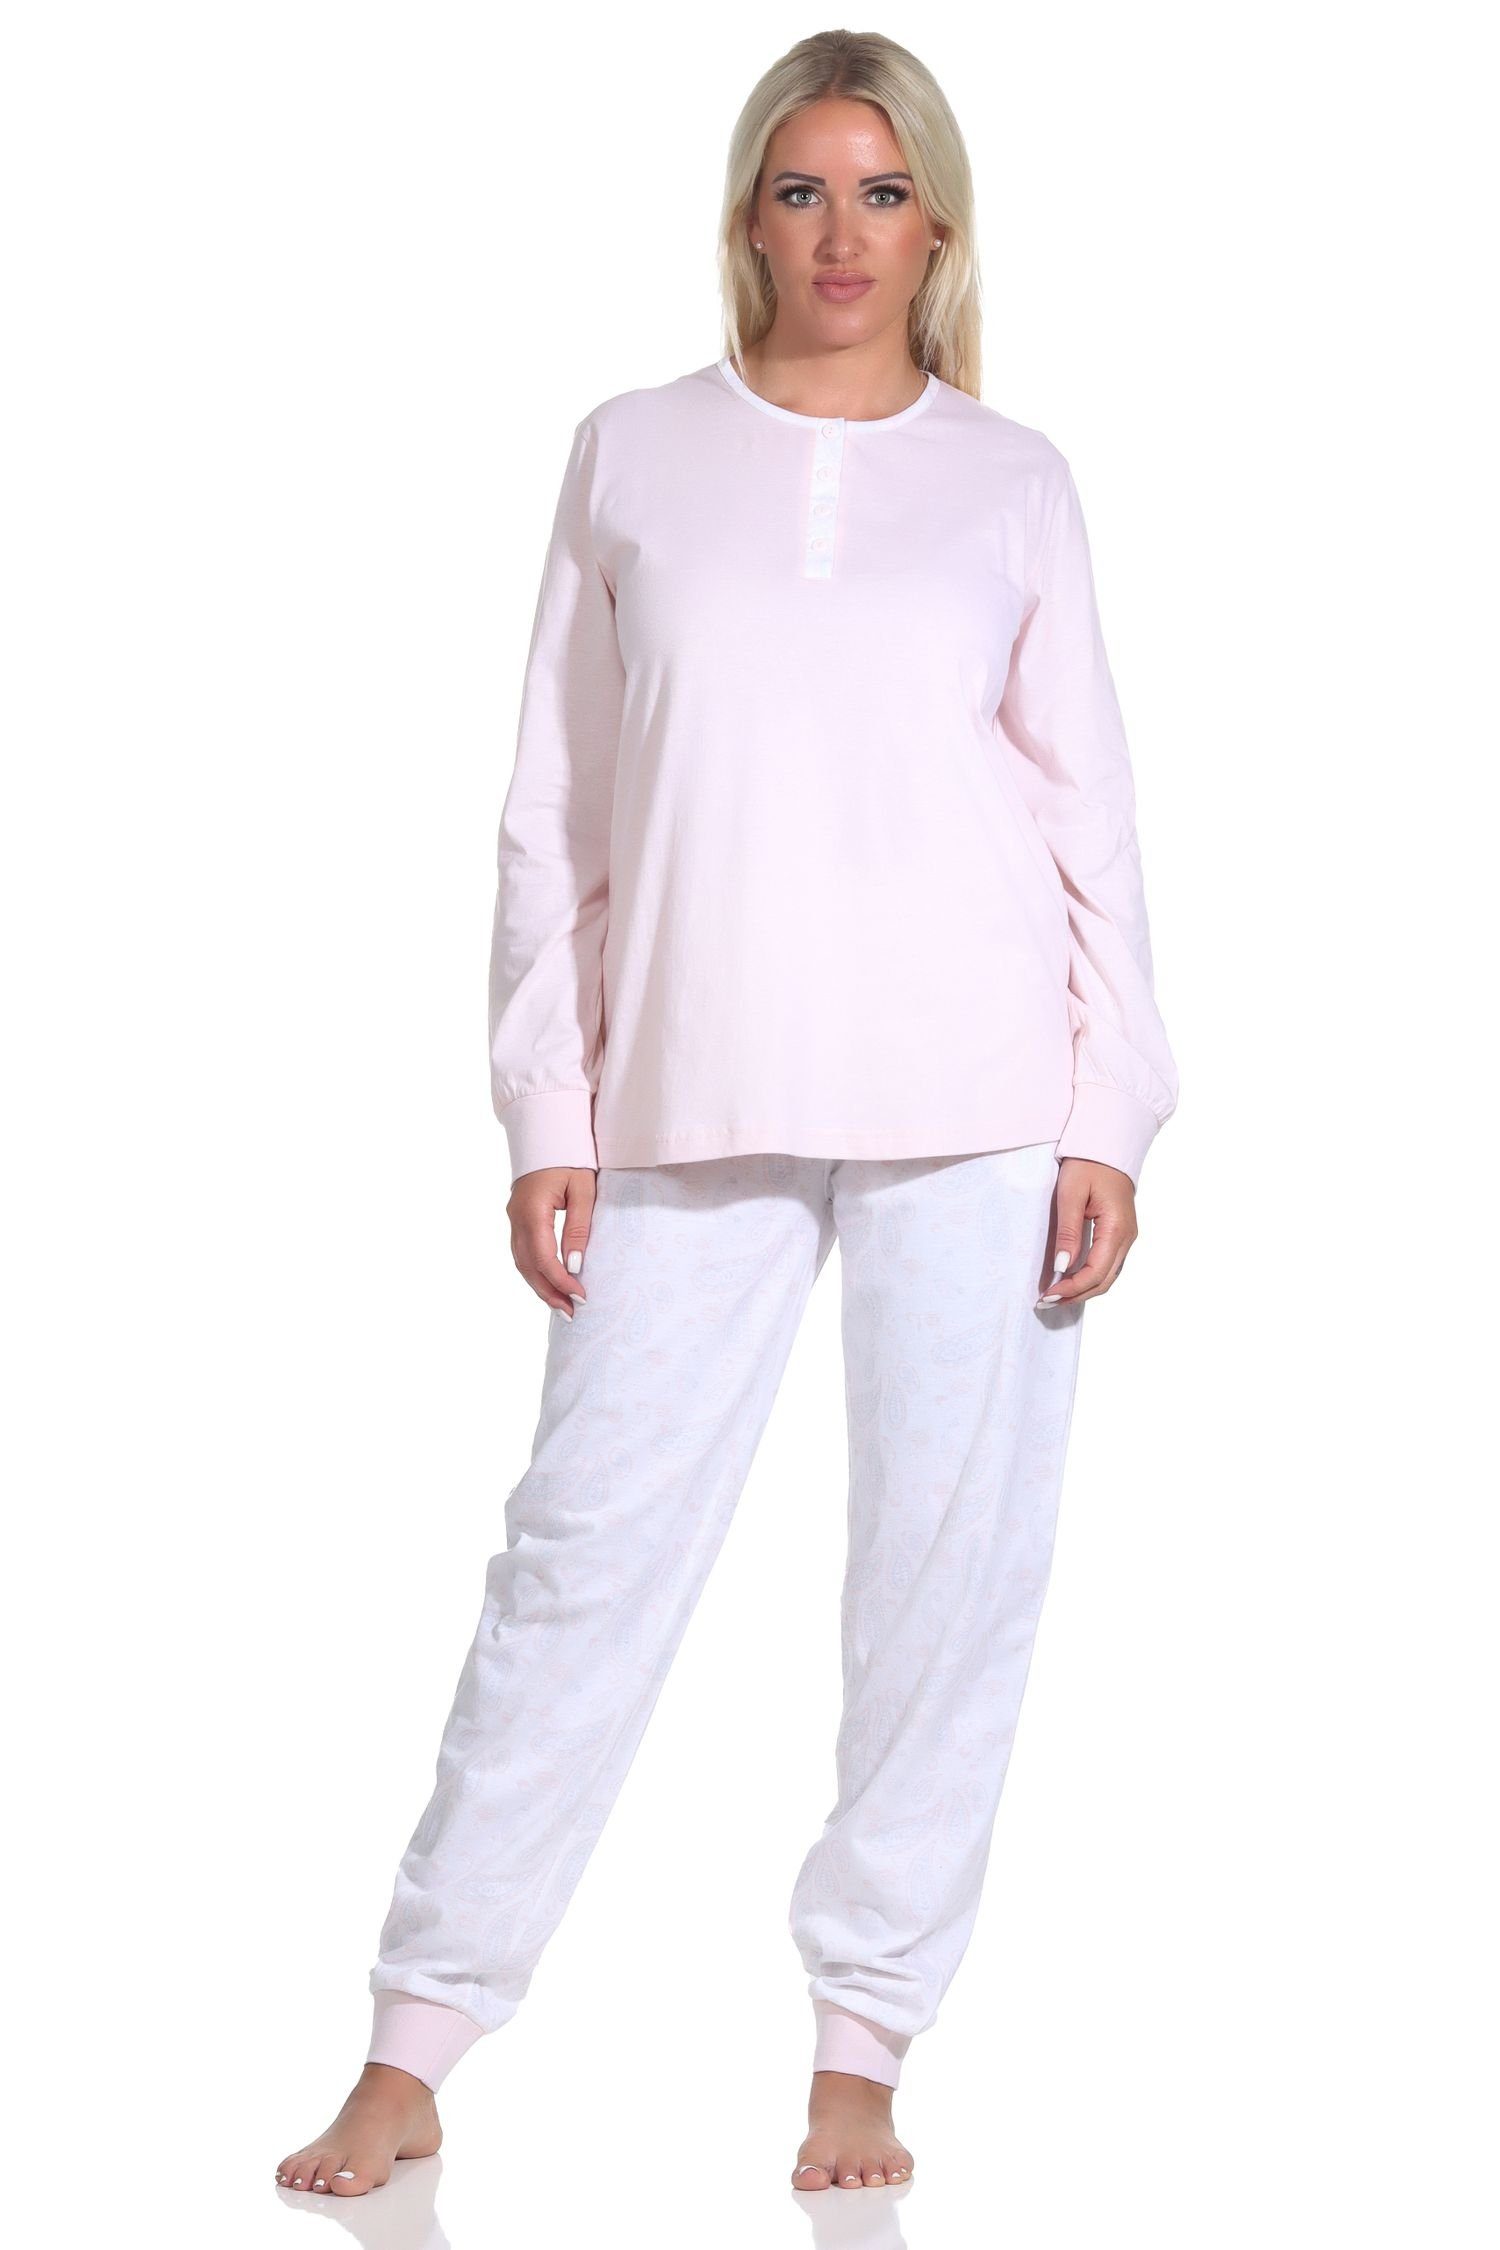 Hose Paysley Normann rosa mit gemusterter Pyjama + Knopfleiste langarm Damen Schlafanzug